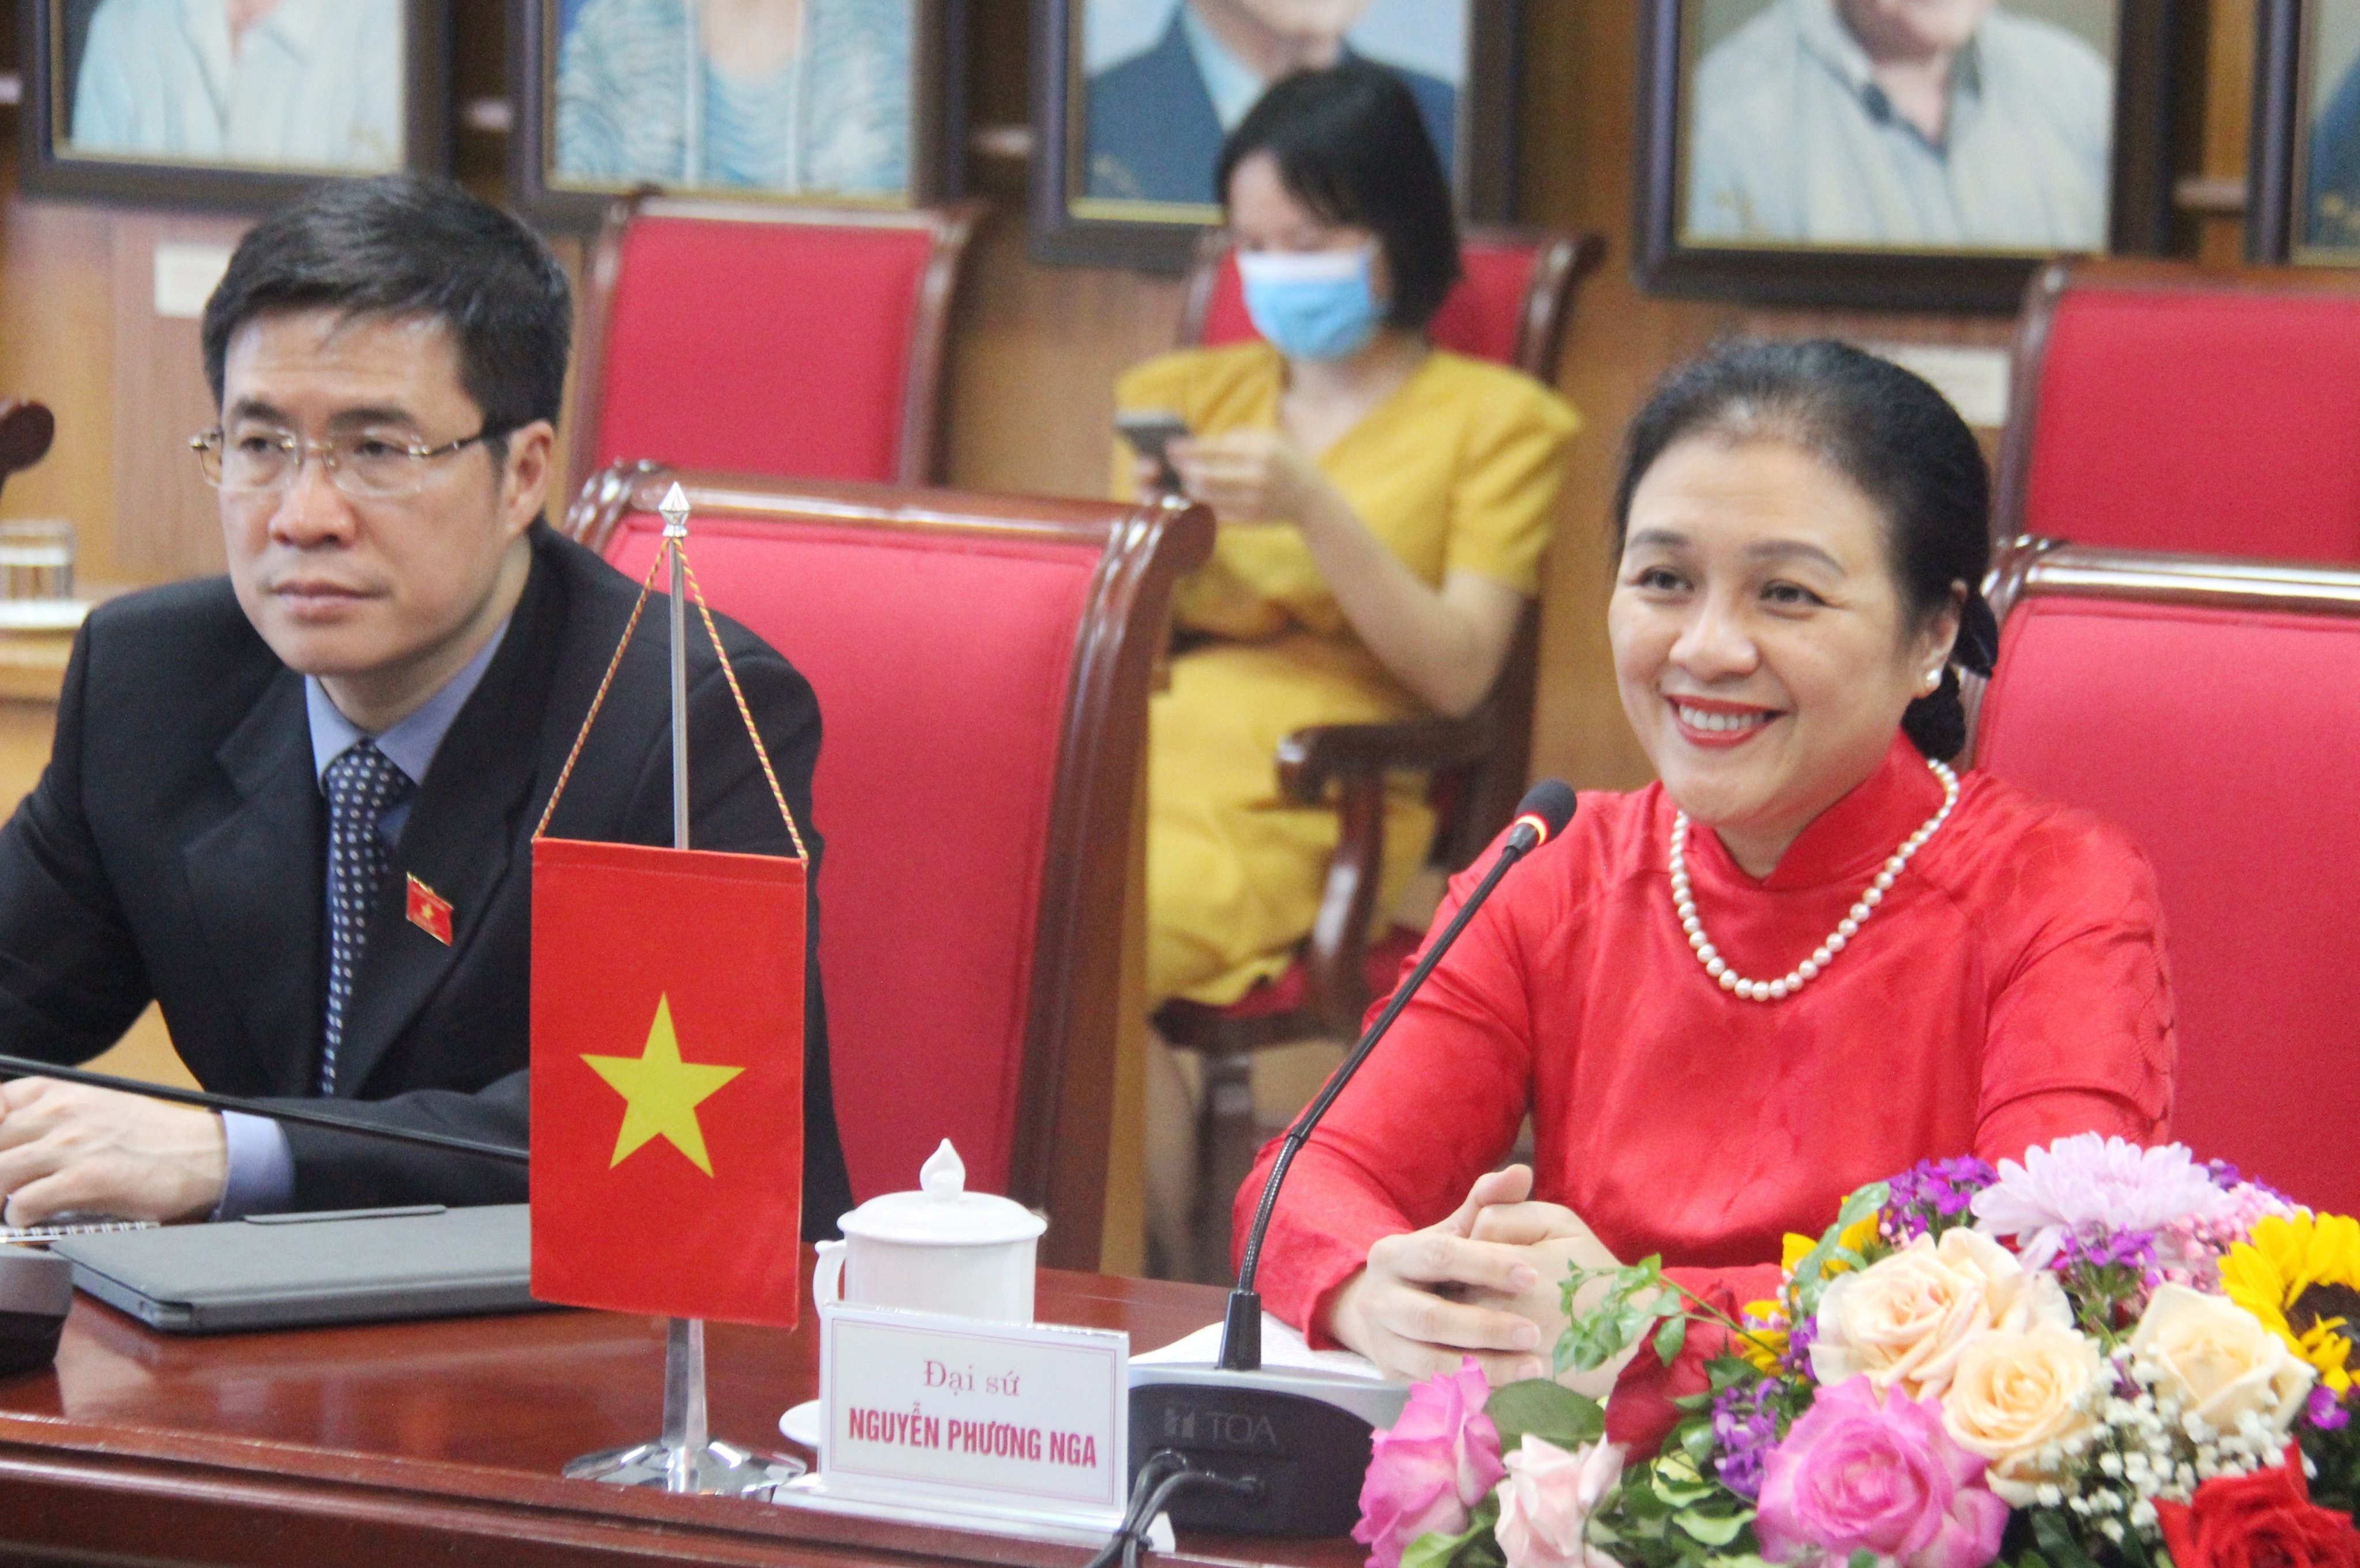 Đại sứ Nguyễn Phương Nga, Chủ tịch Liên hiệp các tổ chức hữu nghị Việt Nam phát biểu tại buổi tiếp (Ảnh: Hồng Ảnh).